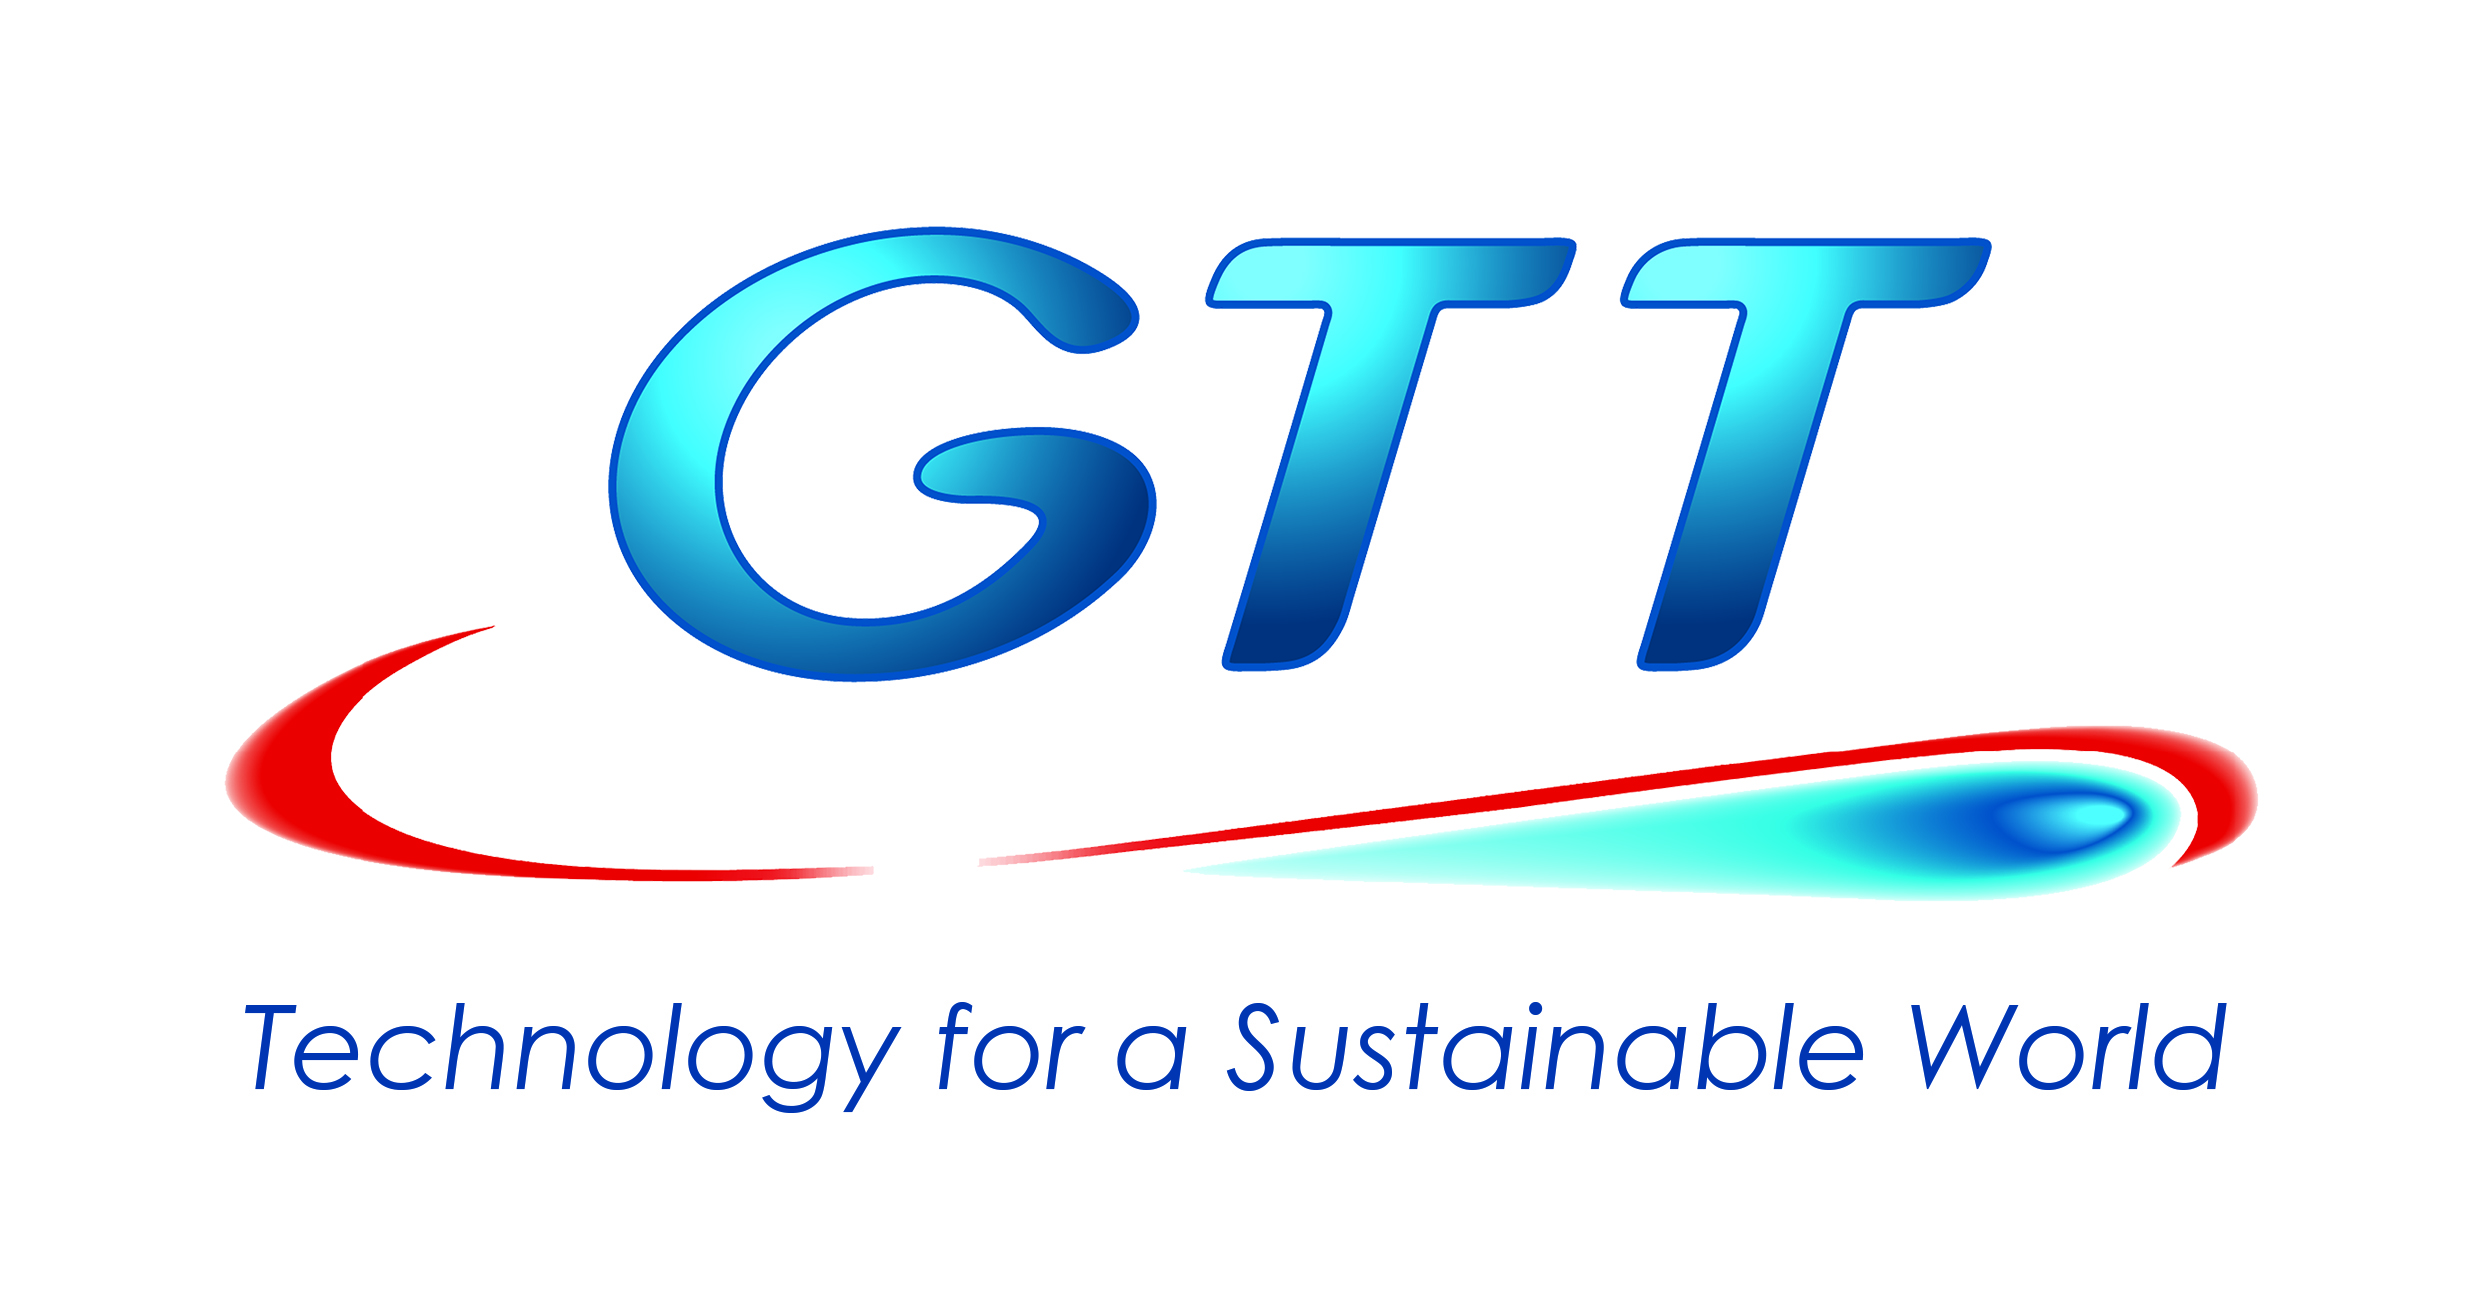 GTT: Revenues of €88